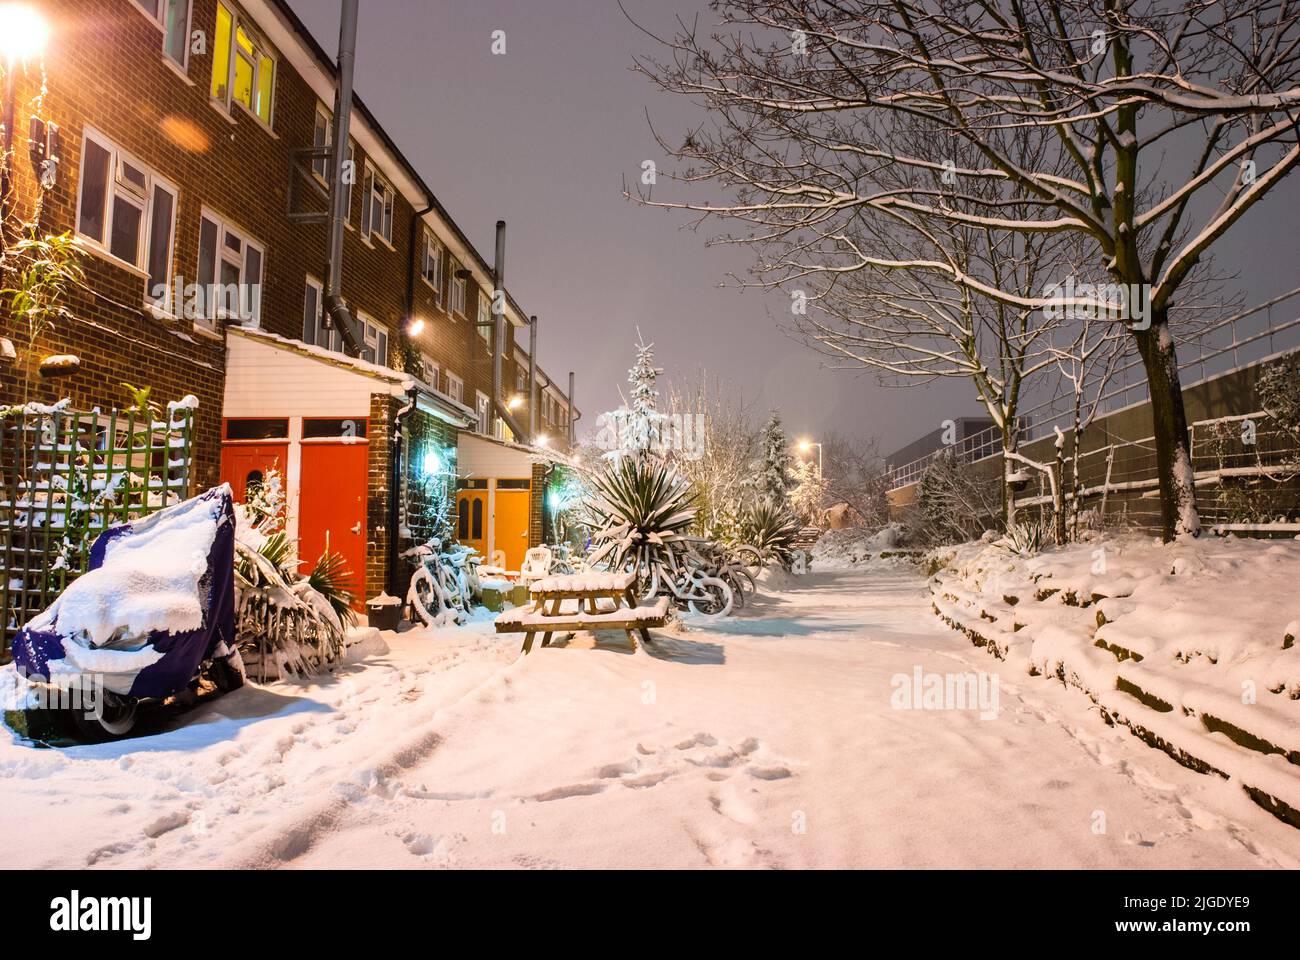 Escena nevada en Sanford street, New Cross - South East London, Inglaterra Foto de stock